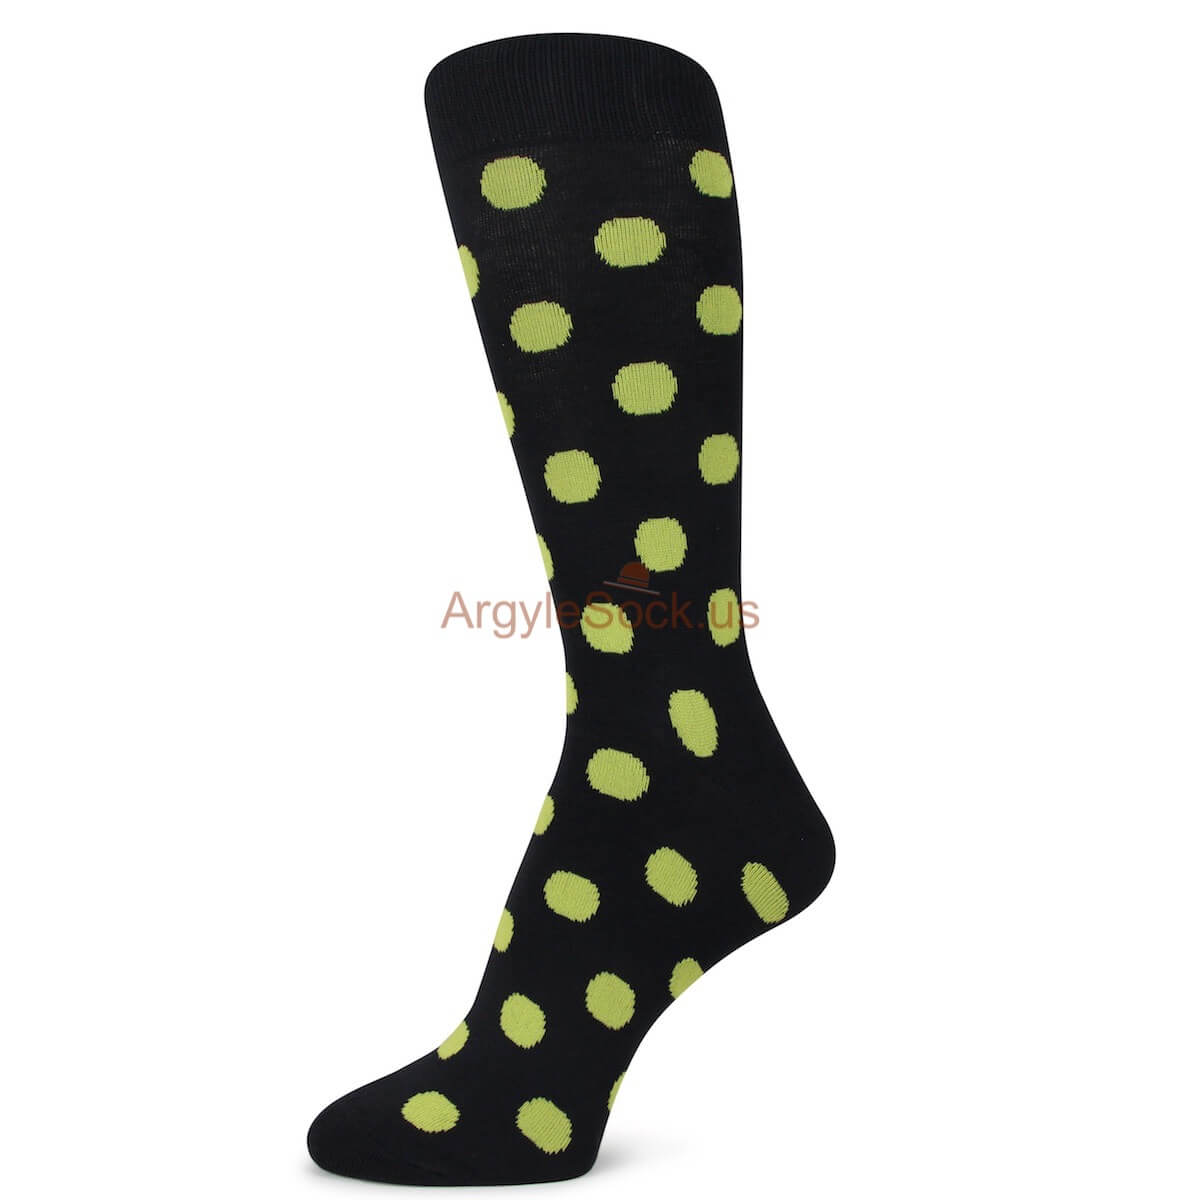 Black with Yellow Polka Dots Mens Socks